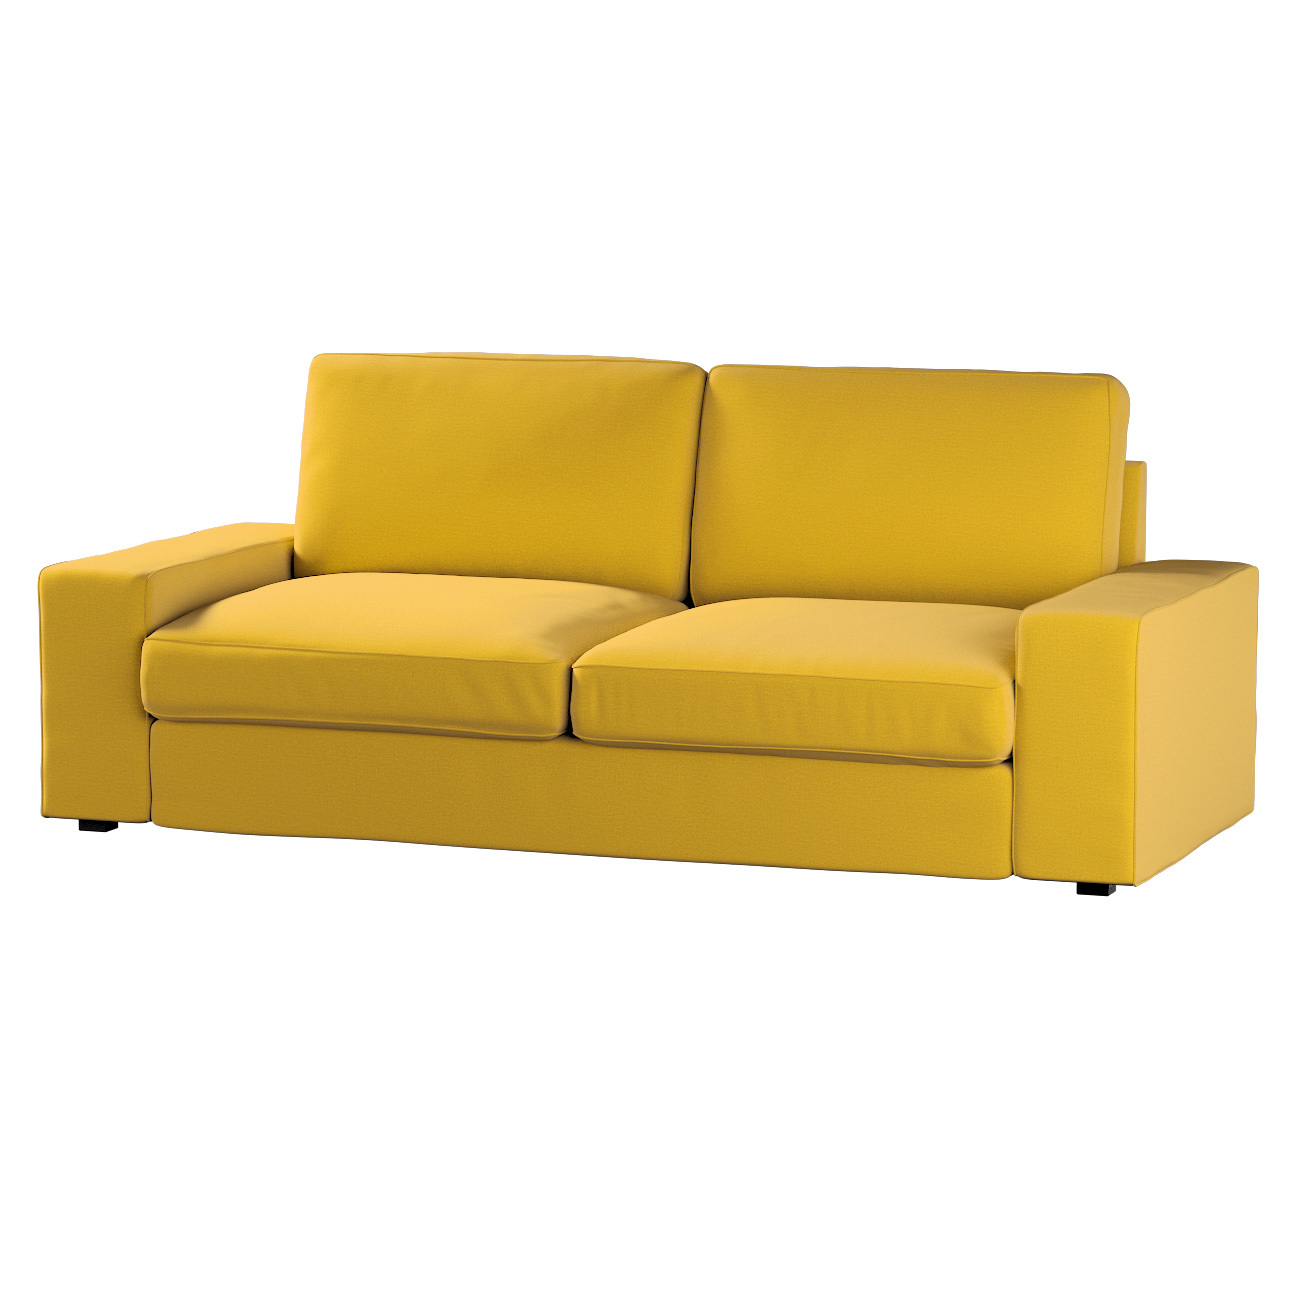 Bezug für Kivik 3-Sitzer Sofa, honiggelb, Bezug für Sofa Kivik 3-Sitzer, In günstig online kaufen